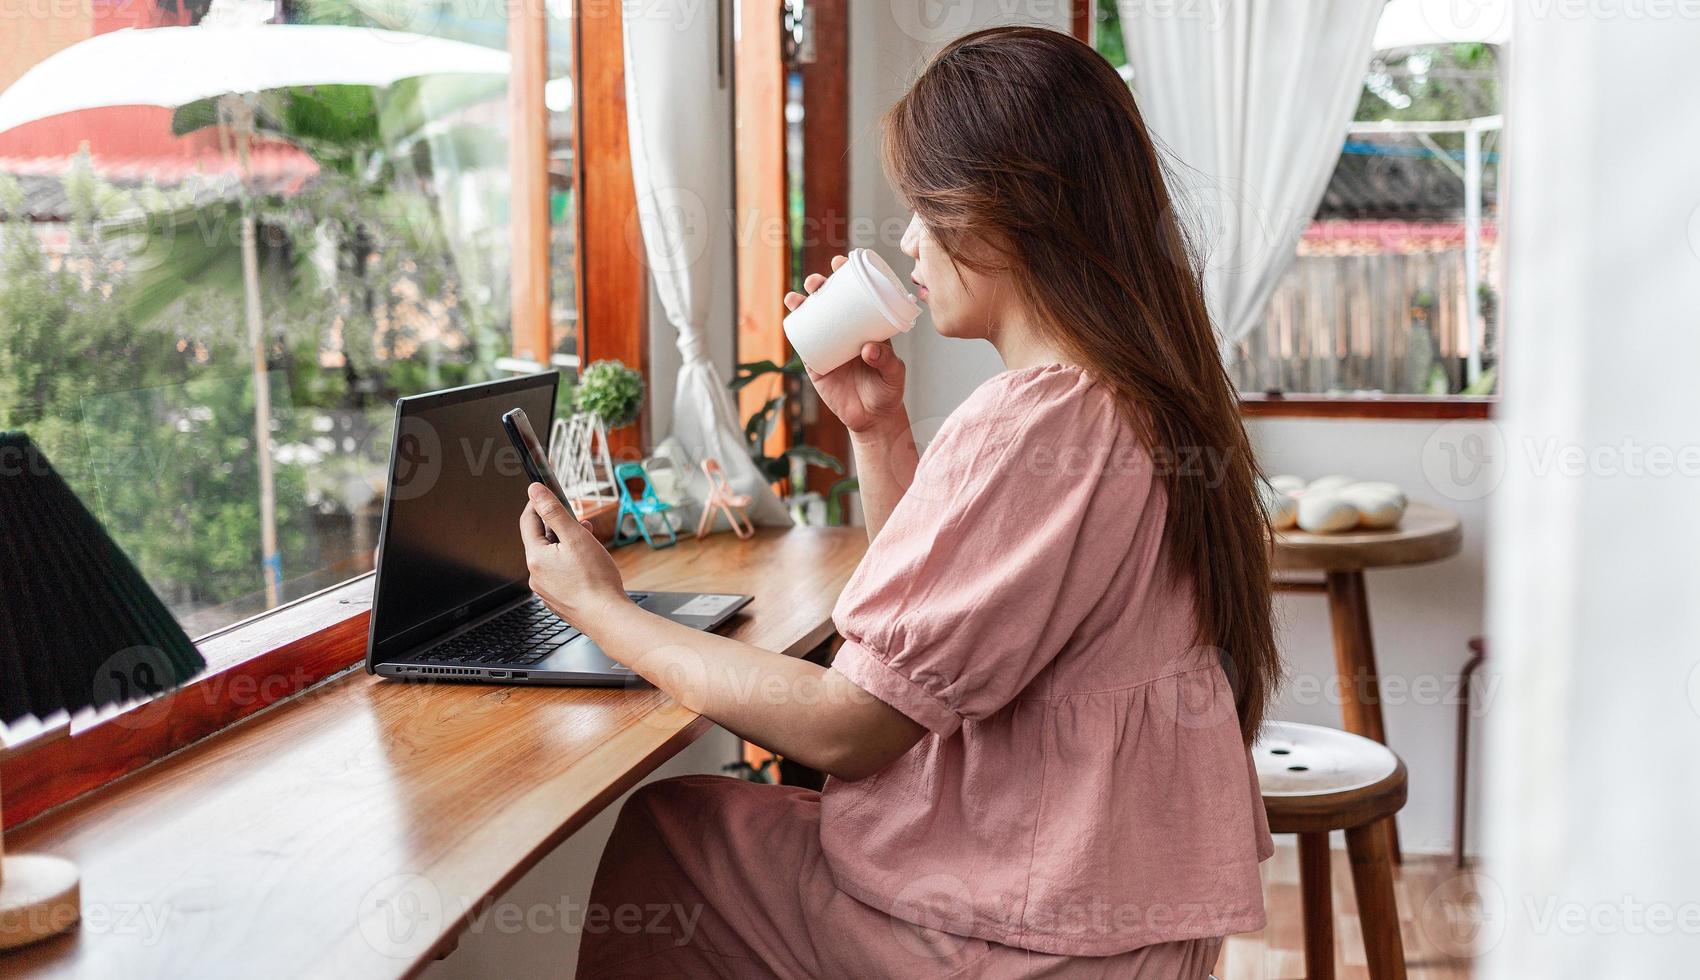 una mujer feliz en un café usando un teléfono inteligente y una computadora portátil tomando café en una taza de papel en el café. joven mujer blanca con cabello largo sentada en una cafetería ocupada trabajando en su teléfono inteligente. foto